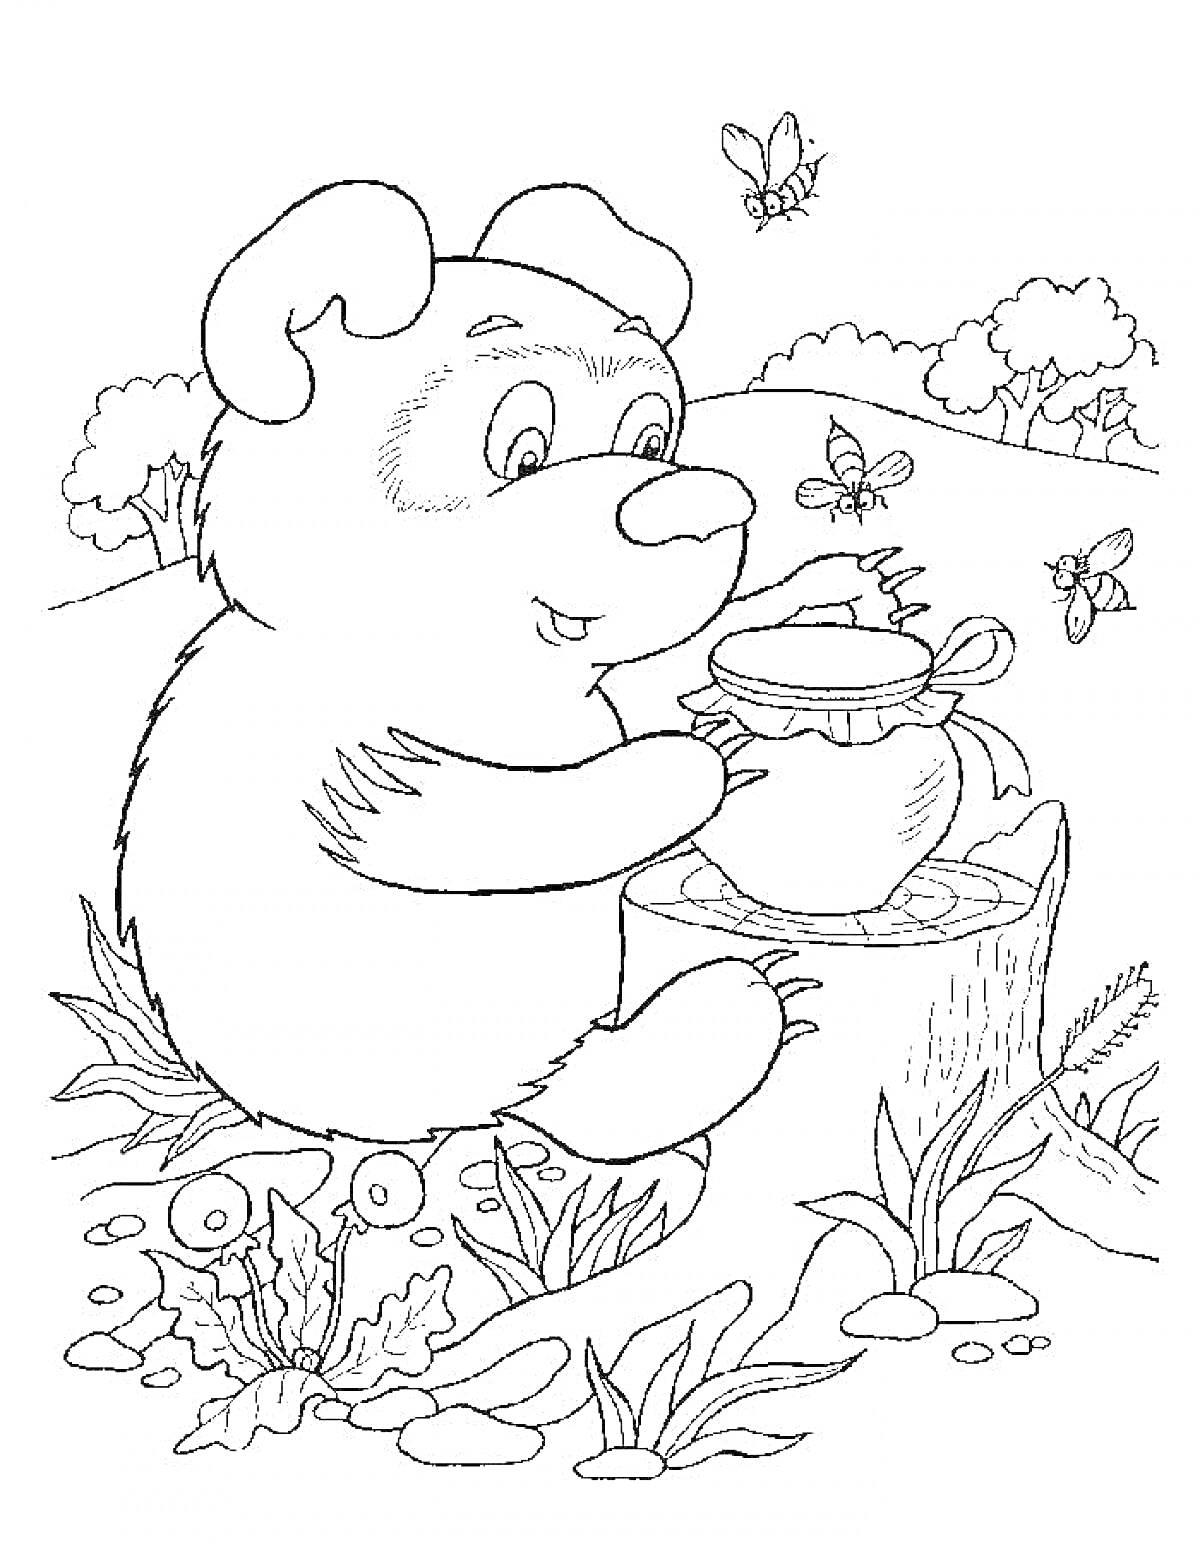 Раскраска Медвежонок с горшком меда на пне среди деревьев, травы и цветов, в окружении пчел и бабочек